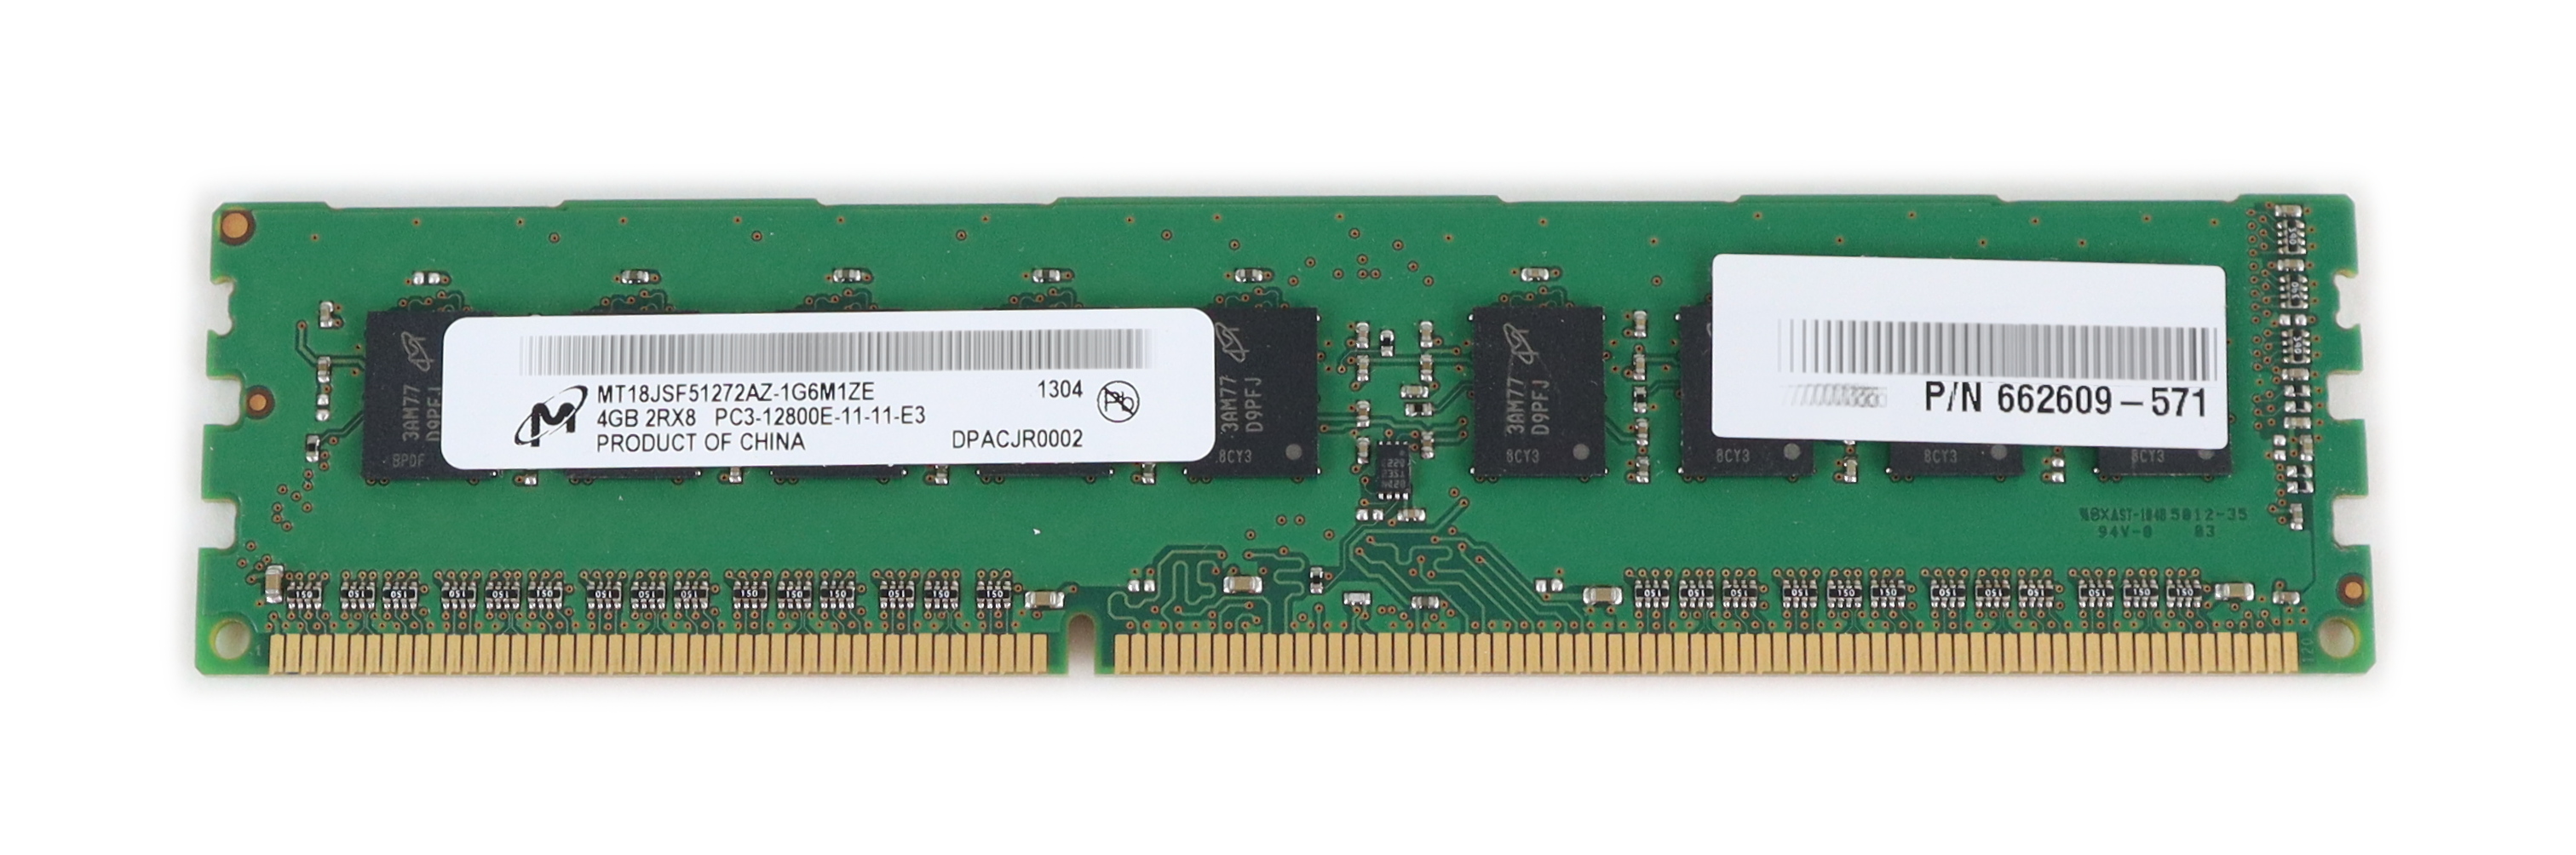 HP Micron MT18JSF51272AZ-1G6M1 4GB PC3-12800E DDR3-1600 ECC 240-Pin 662609-571